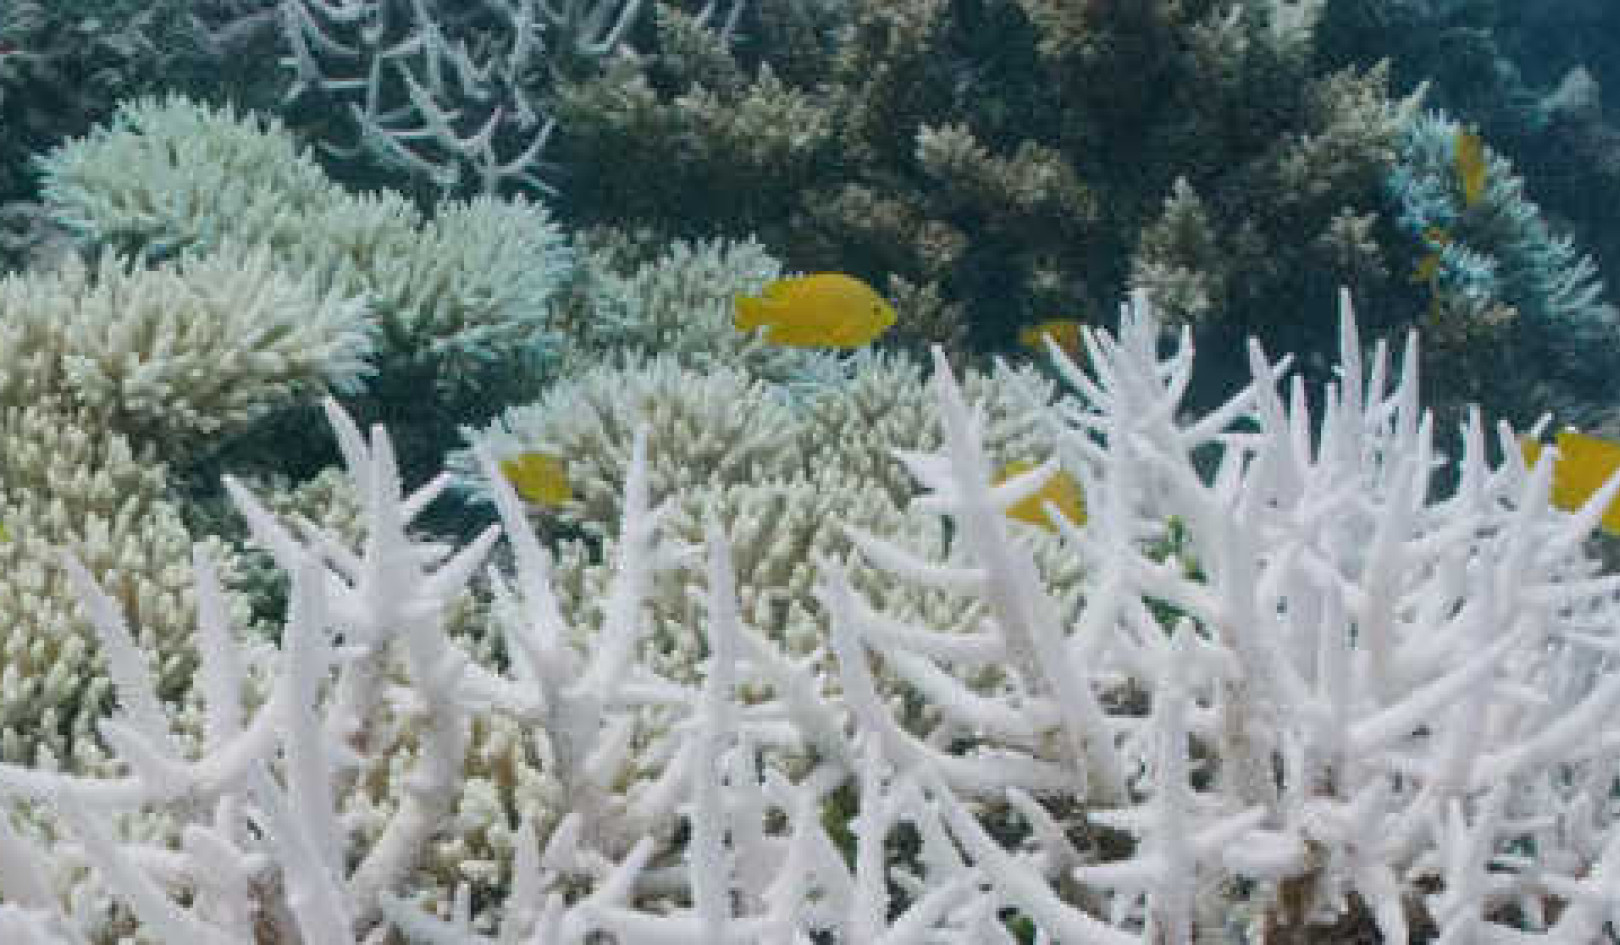 Ismételt korallfehérítés a vadon élő állatok számára, kevés lehetőséggel